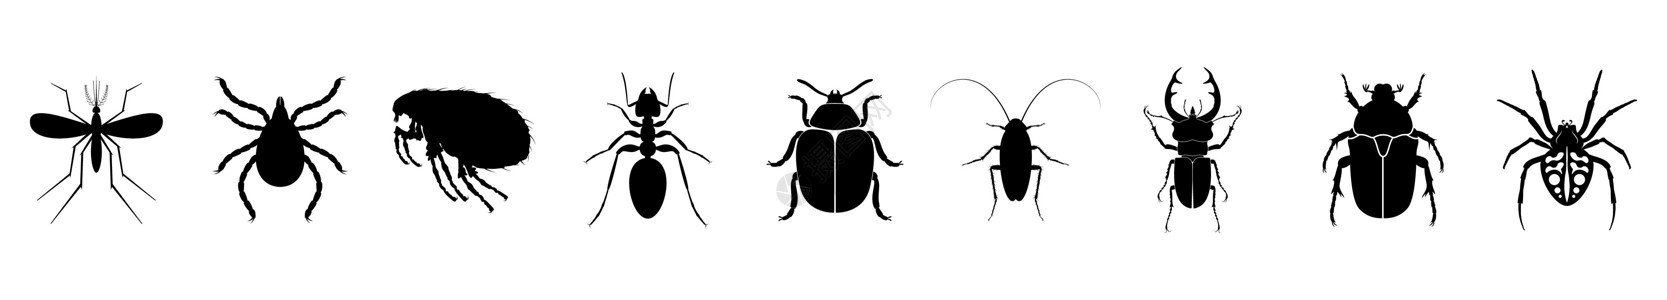 昆虫图标集 各种昆虫的轮廓 矢量图解图片